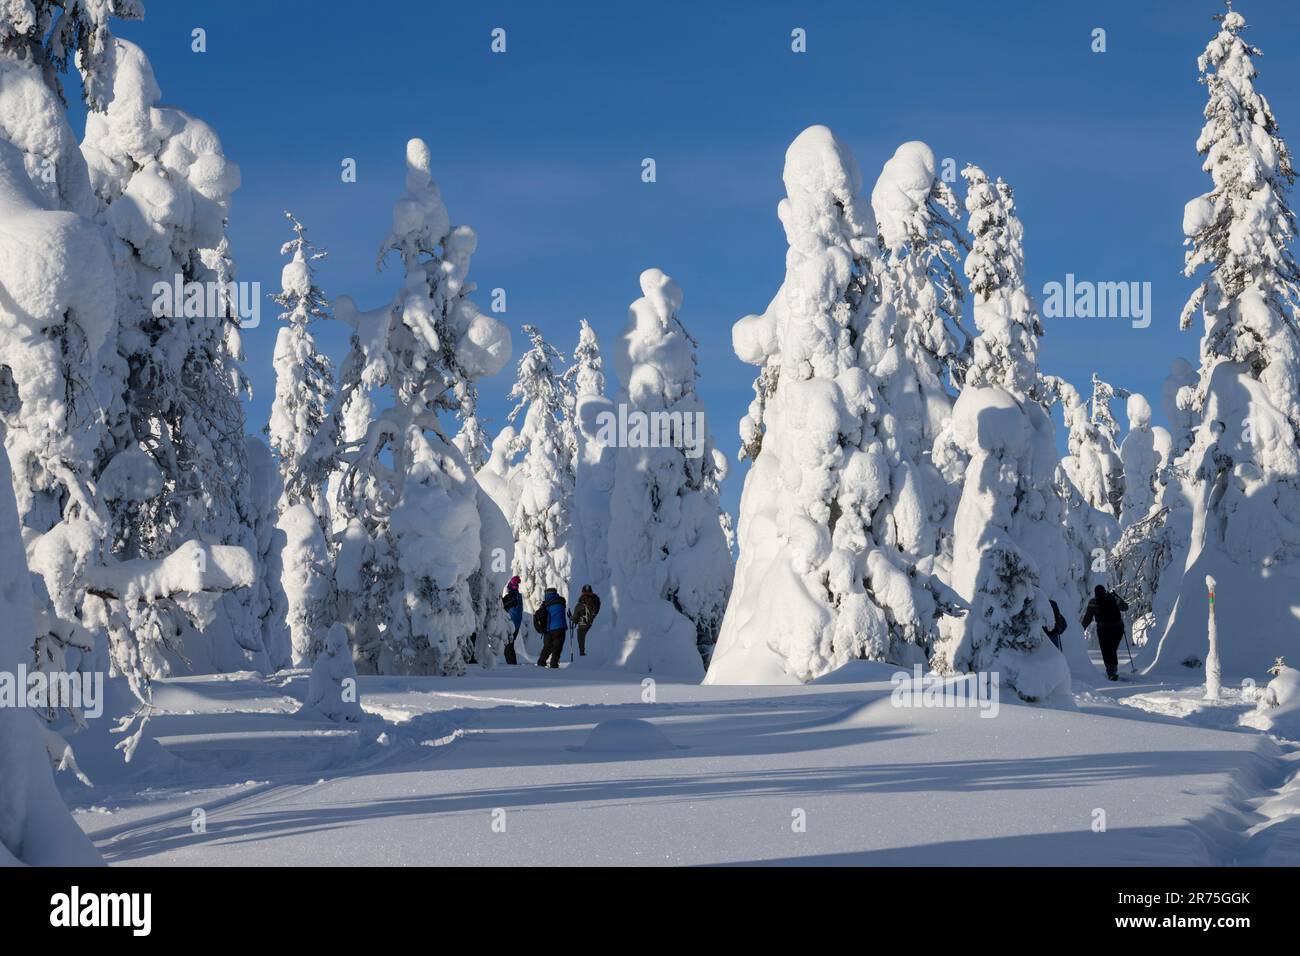 Épinettes enneigées dans le parc national de Riisitunturi, Laponie, Finlande, Europe Banque D'Images